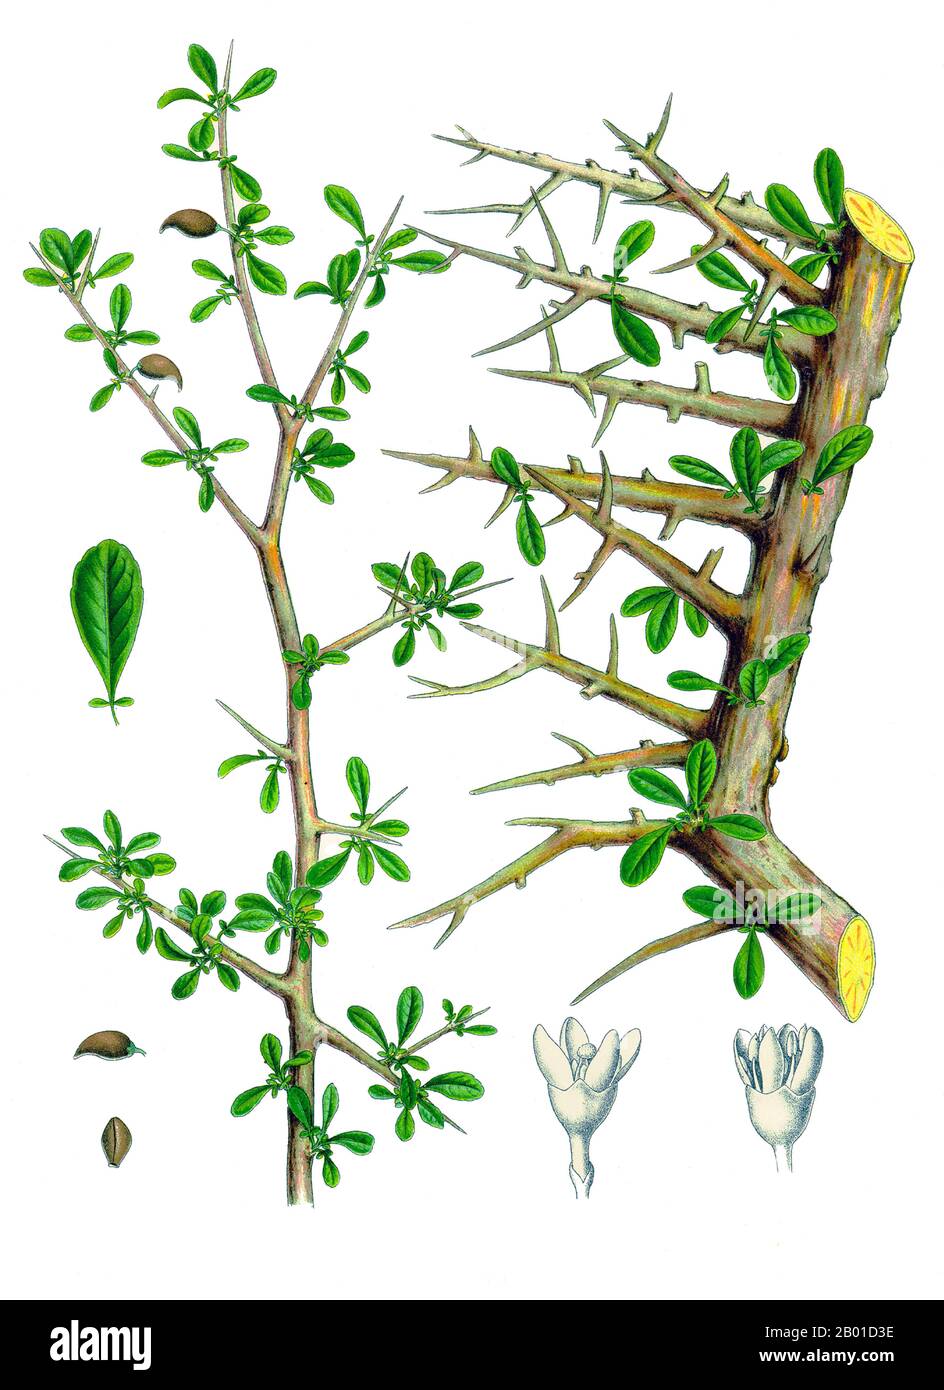 Arabie/Allemagne: Parties d'un arbre de myrrhe. Illustration de Walther Otto Muller (1833-1887) pour le Medizinal-Pflanzen d'Hermann Adolph Köhler, 1887. La myrrhe est l'oléorésine aromatique d'un certain nombre de petites espèces d'arbres épineux du genre Commiphora, qui poussent dans un sol sec et pierreux. Une oléorésine est un mélange naturel d'une huile essentielle et d'une résine. La résine de myrrhe est une gomme naturelle. Lorsqu'une blessure d'arbre pénètre à travers l'écorce et dans l'aubier, l'arbre purge une résine. La gomme de myrrhe, comme l'encens, est une telle résine. Lorsque les gens récoltent de la myrrhe, ils ont blessé les arbres à plusieurs reprises pour les saigner de la gomme. Banque D'Images